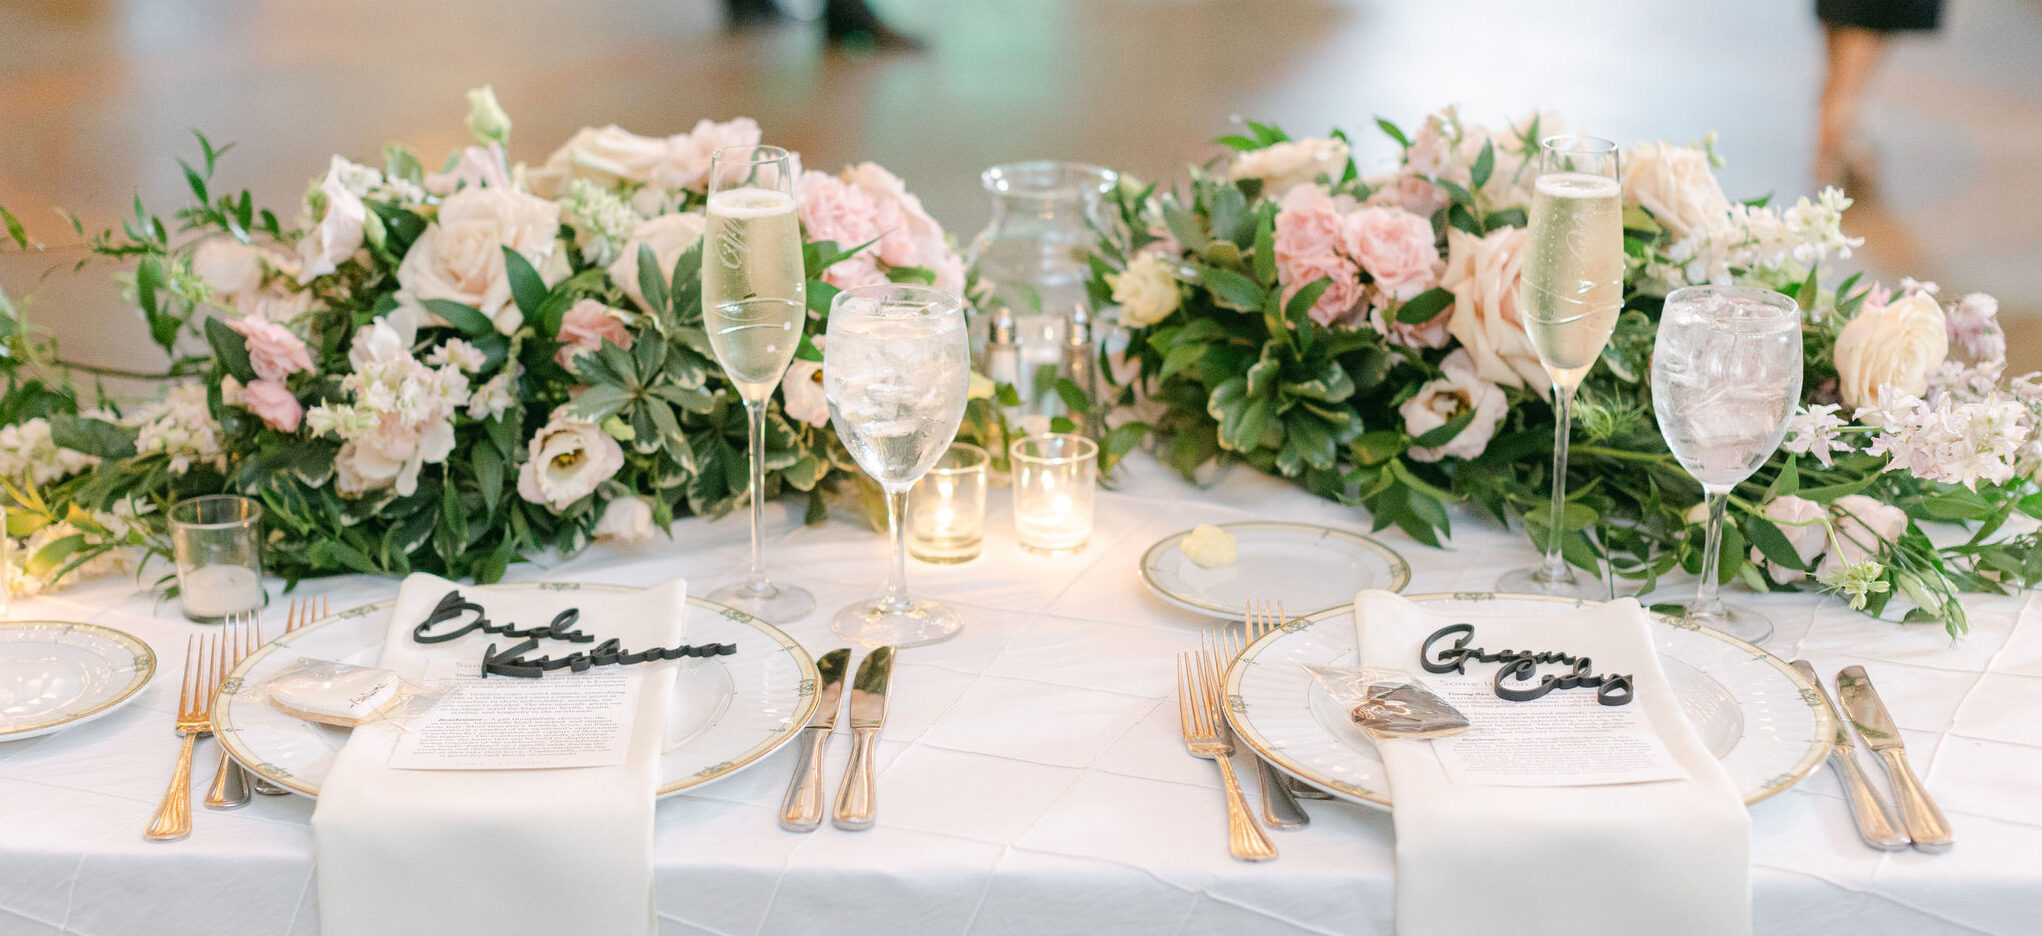 elegant events florist - floral bouquet - bridesmaid bouquets - - philadelphia wedding reception - reception floral centerpiece - sweetheart table - table centerpiece